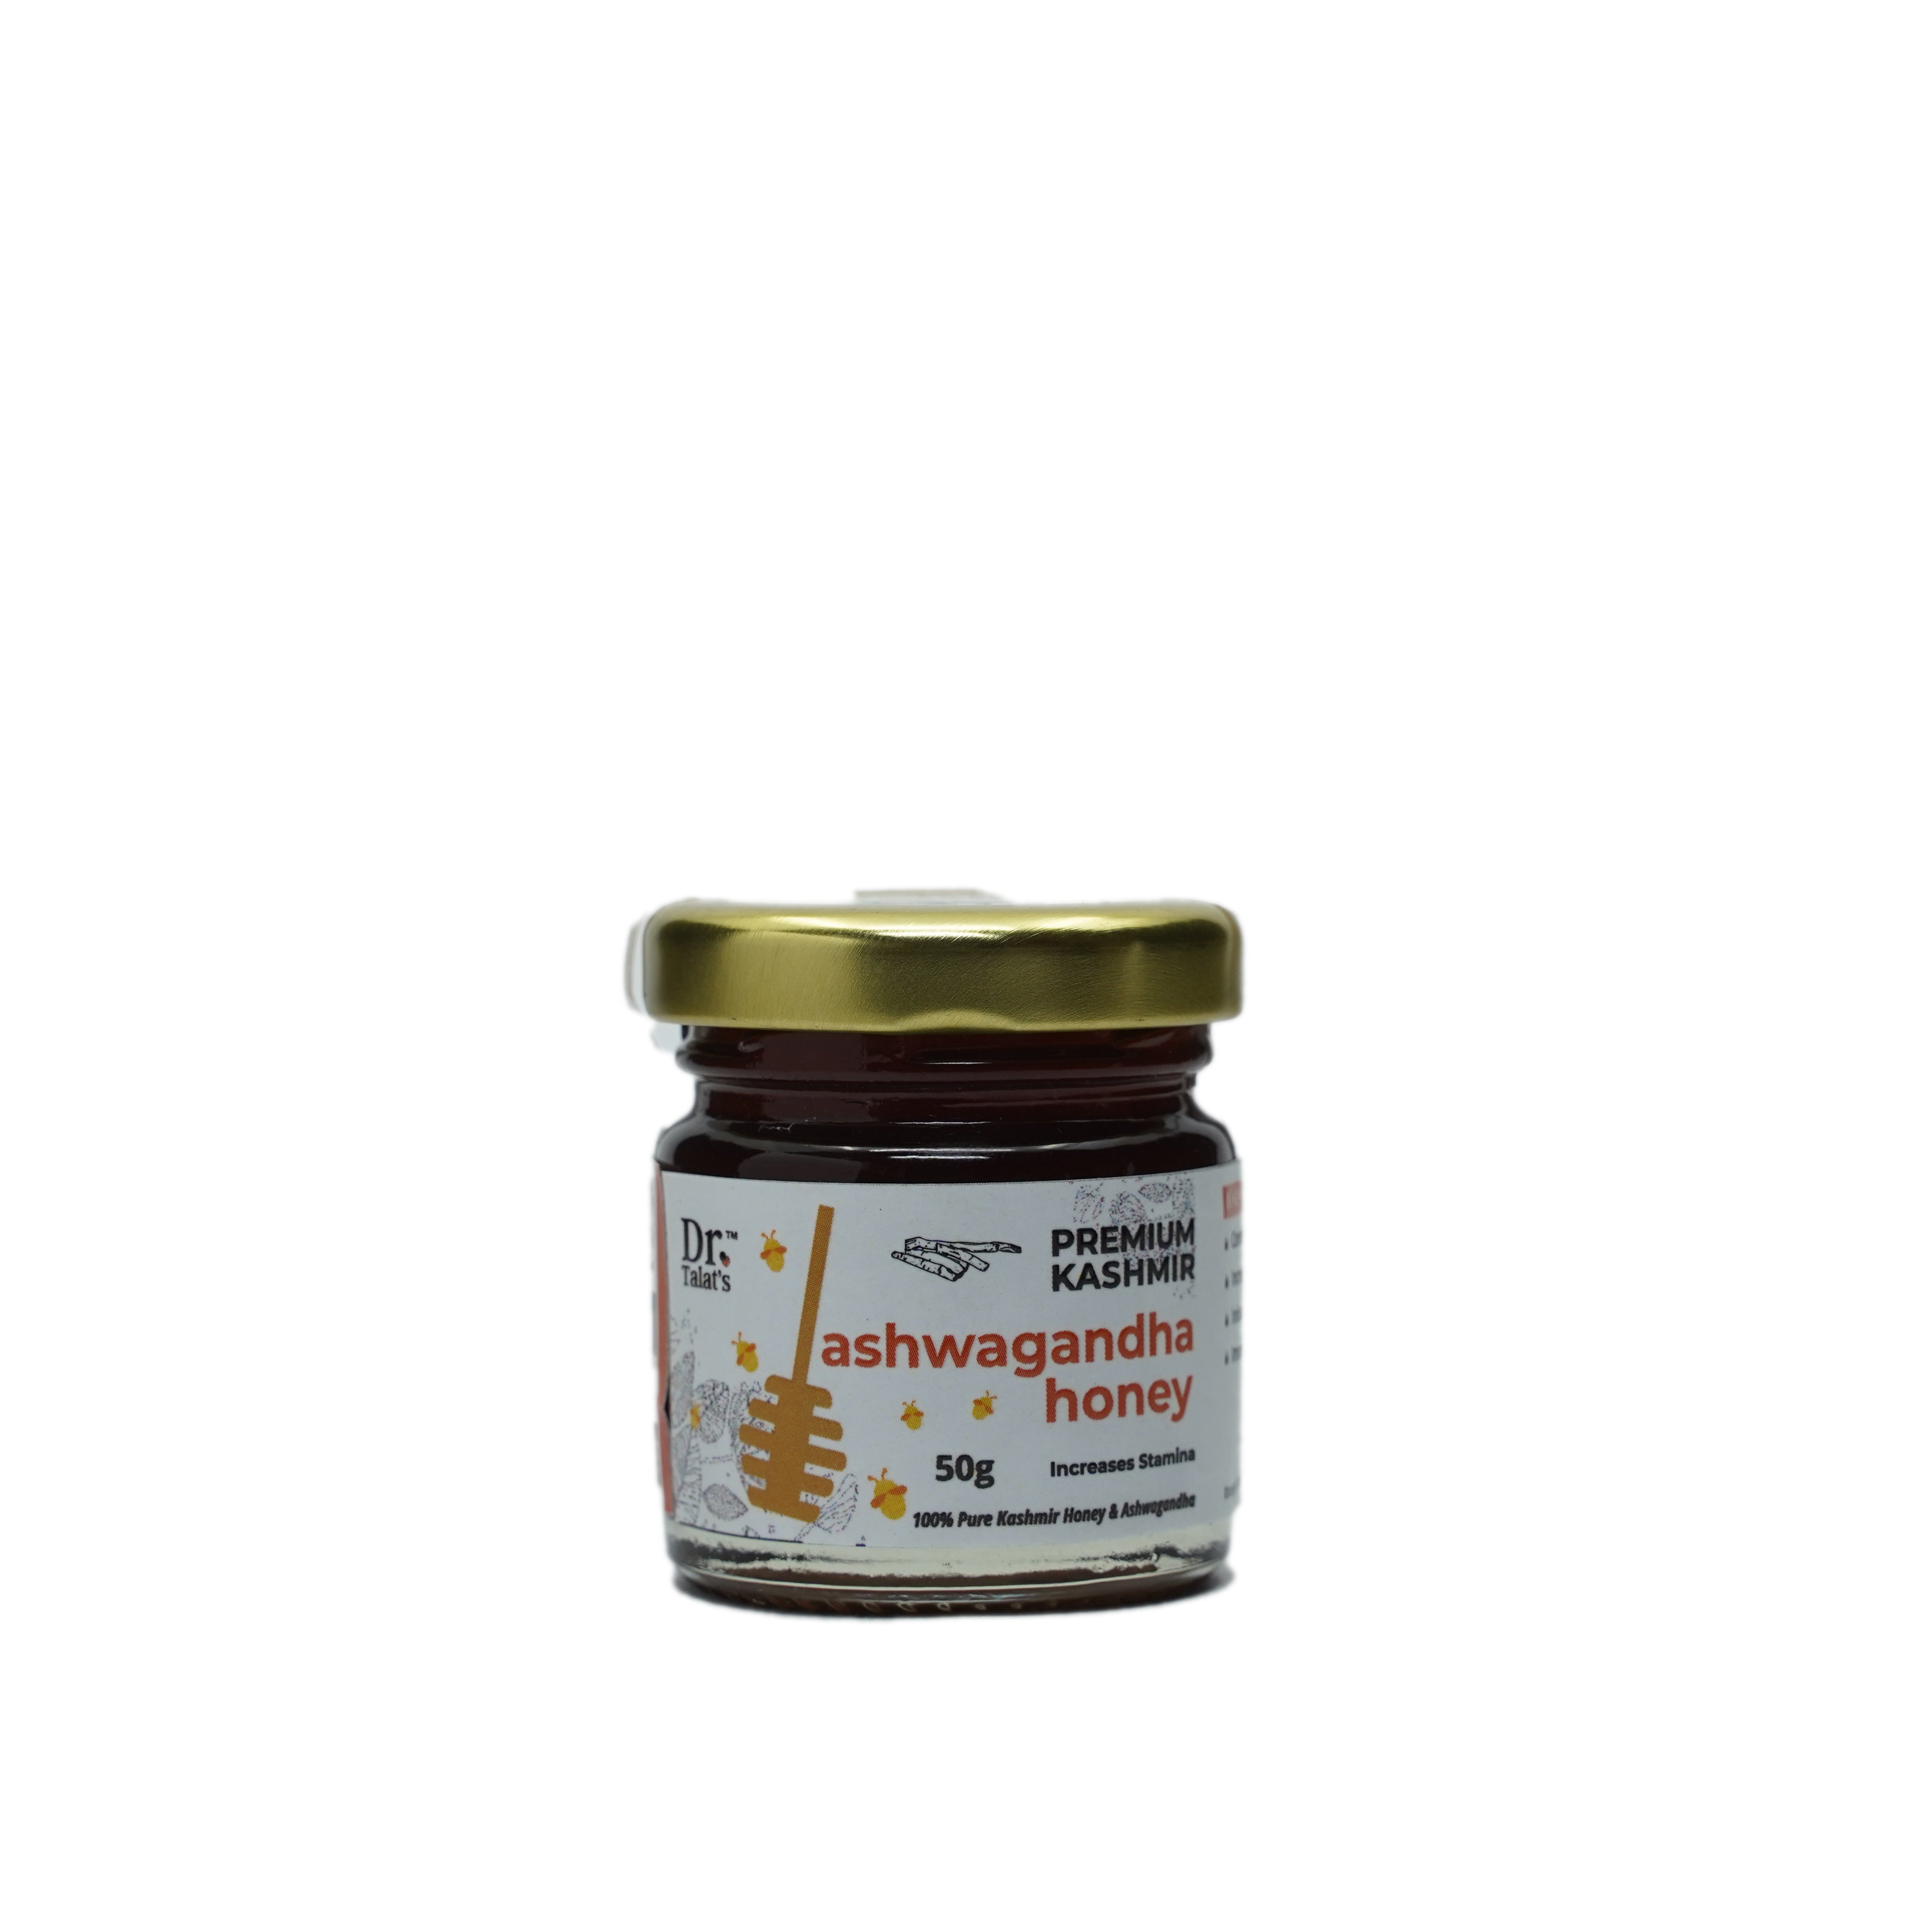 Premium Kashmir Ashwagandha Honey